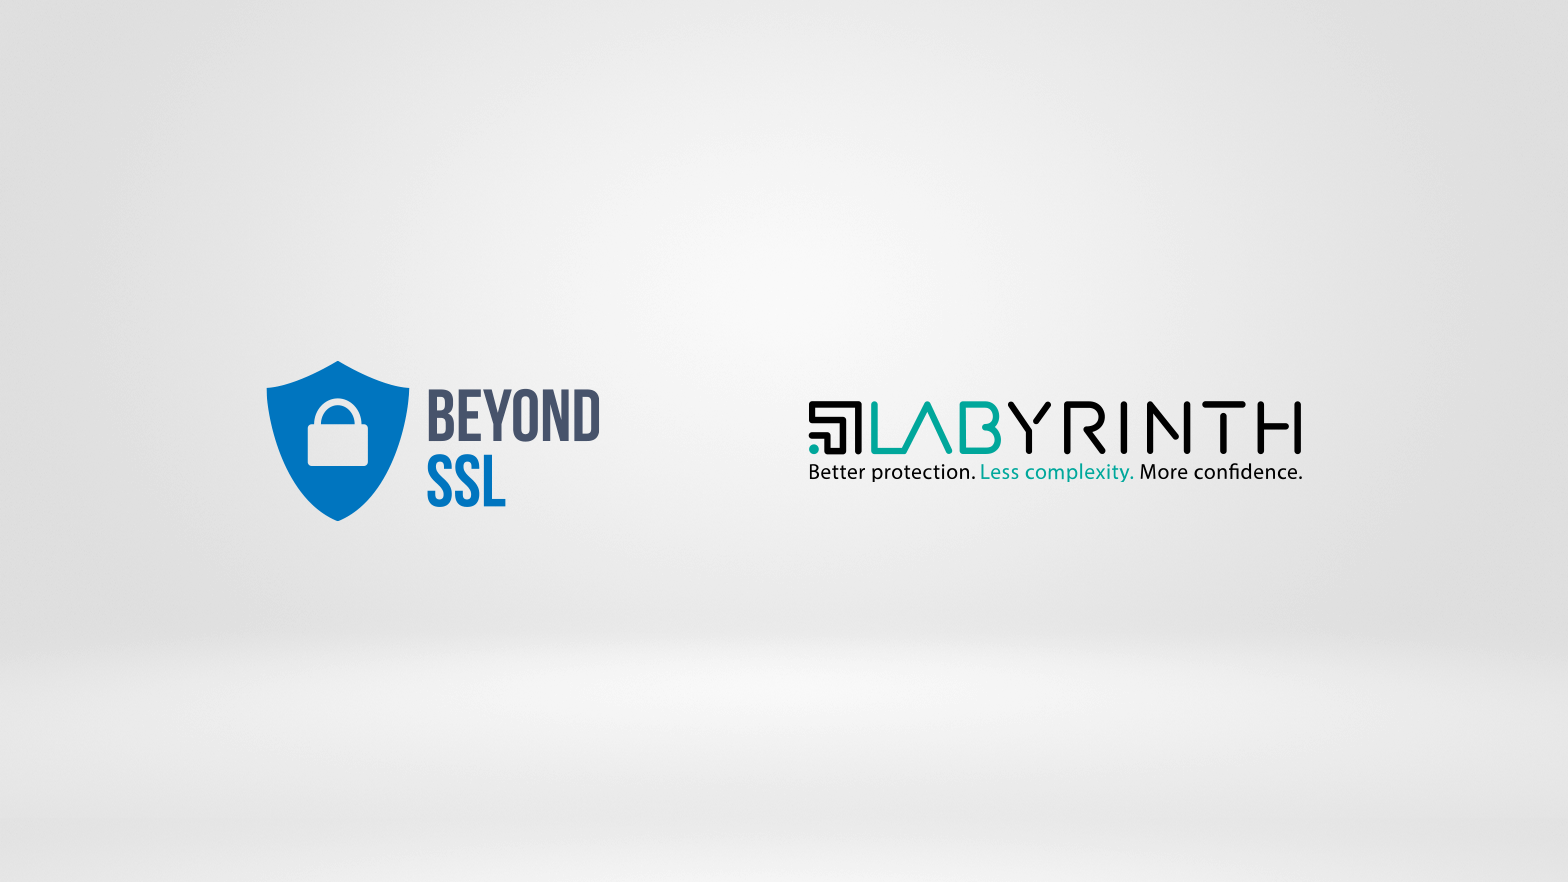 beyond SSL und Labyrinth: mehr Sicherheit für Ihr Unternehmen | beyond SSL Blog